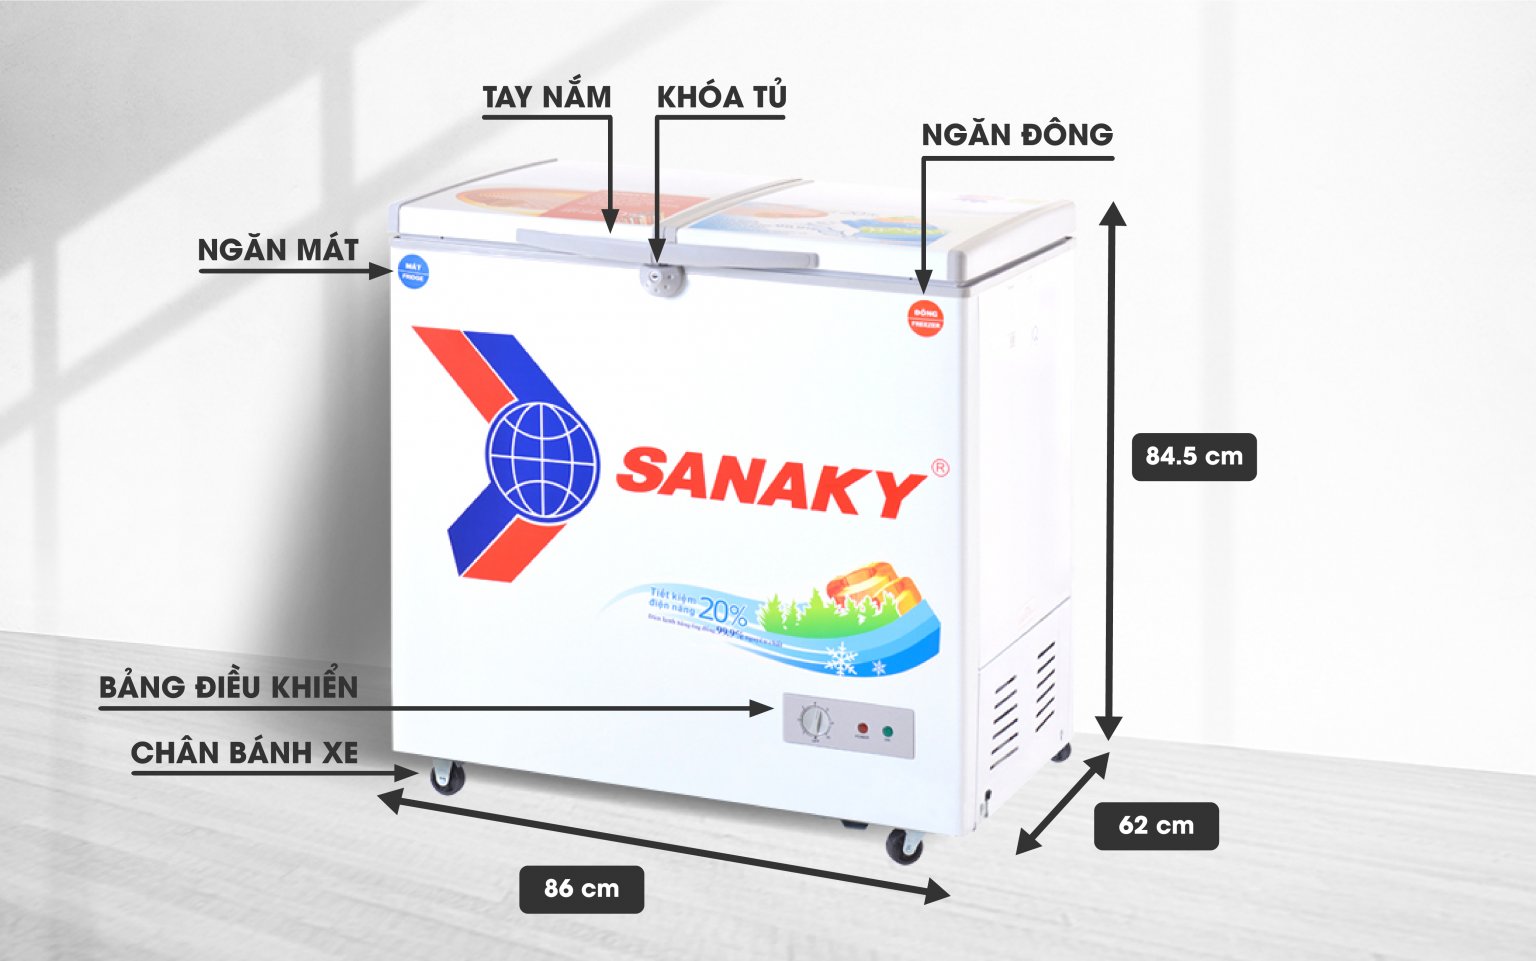 Tủ Đông Sanaky VH-2599W1